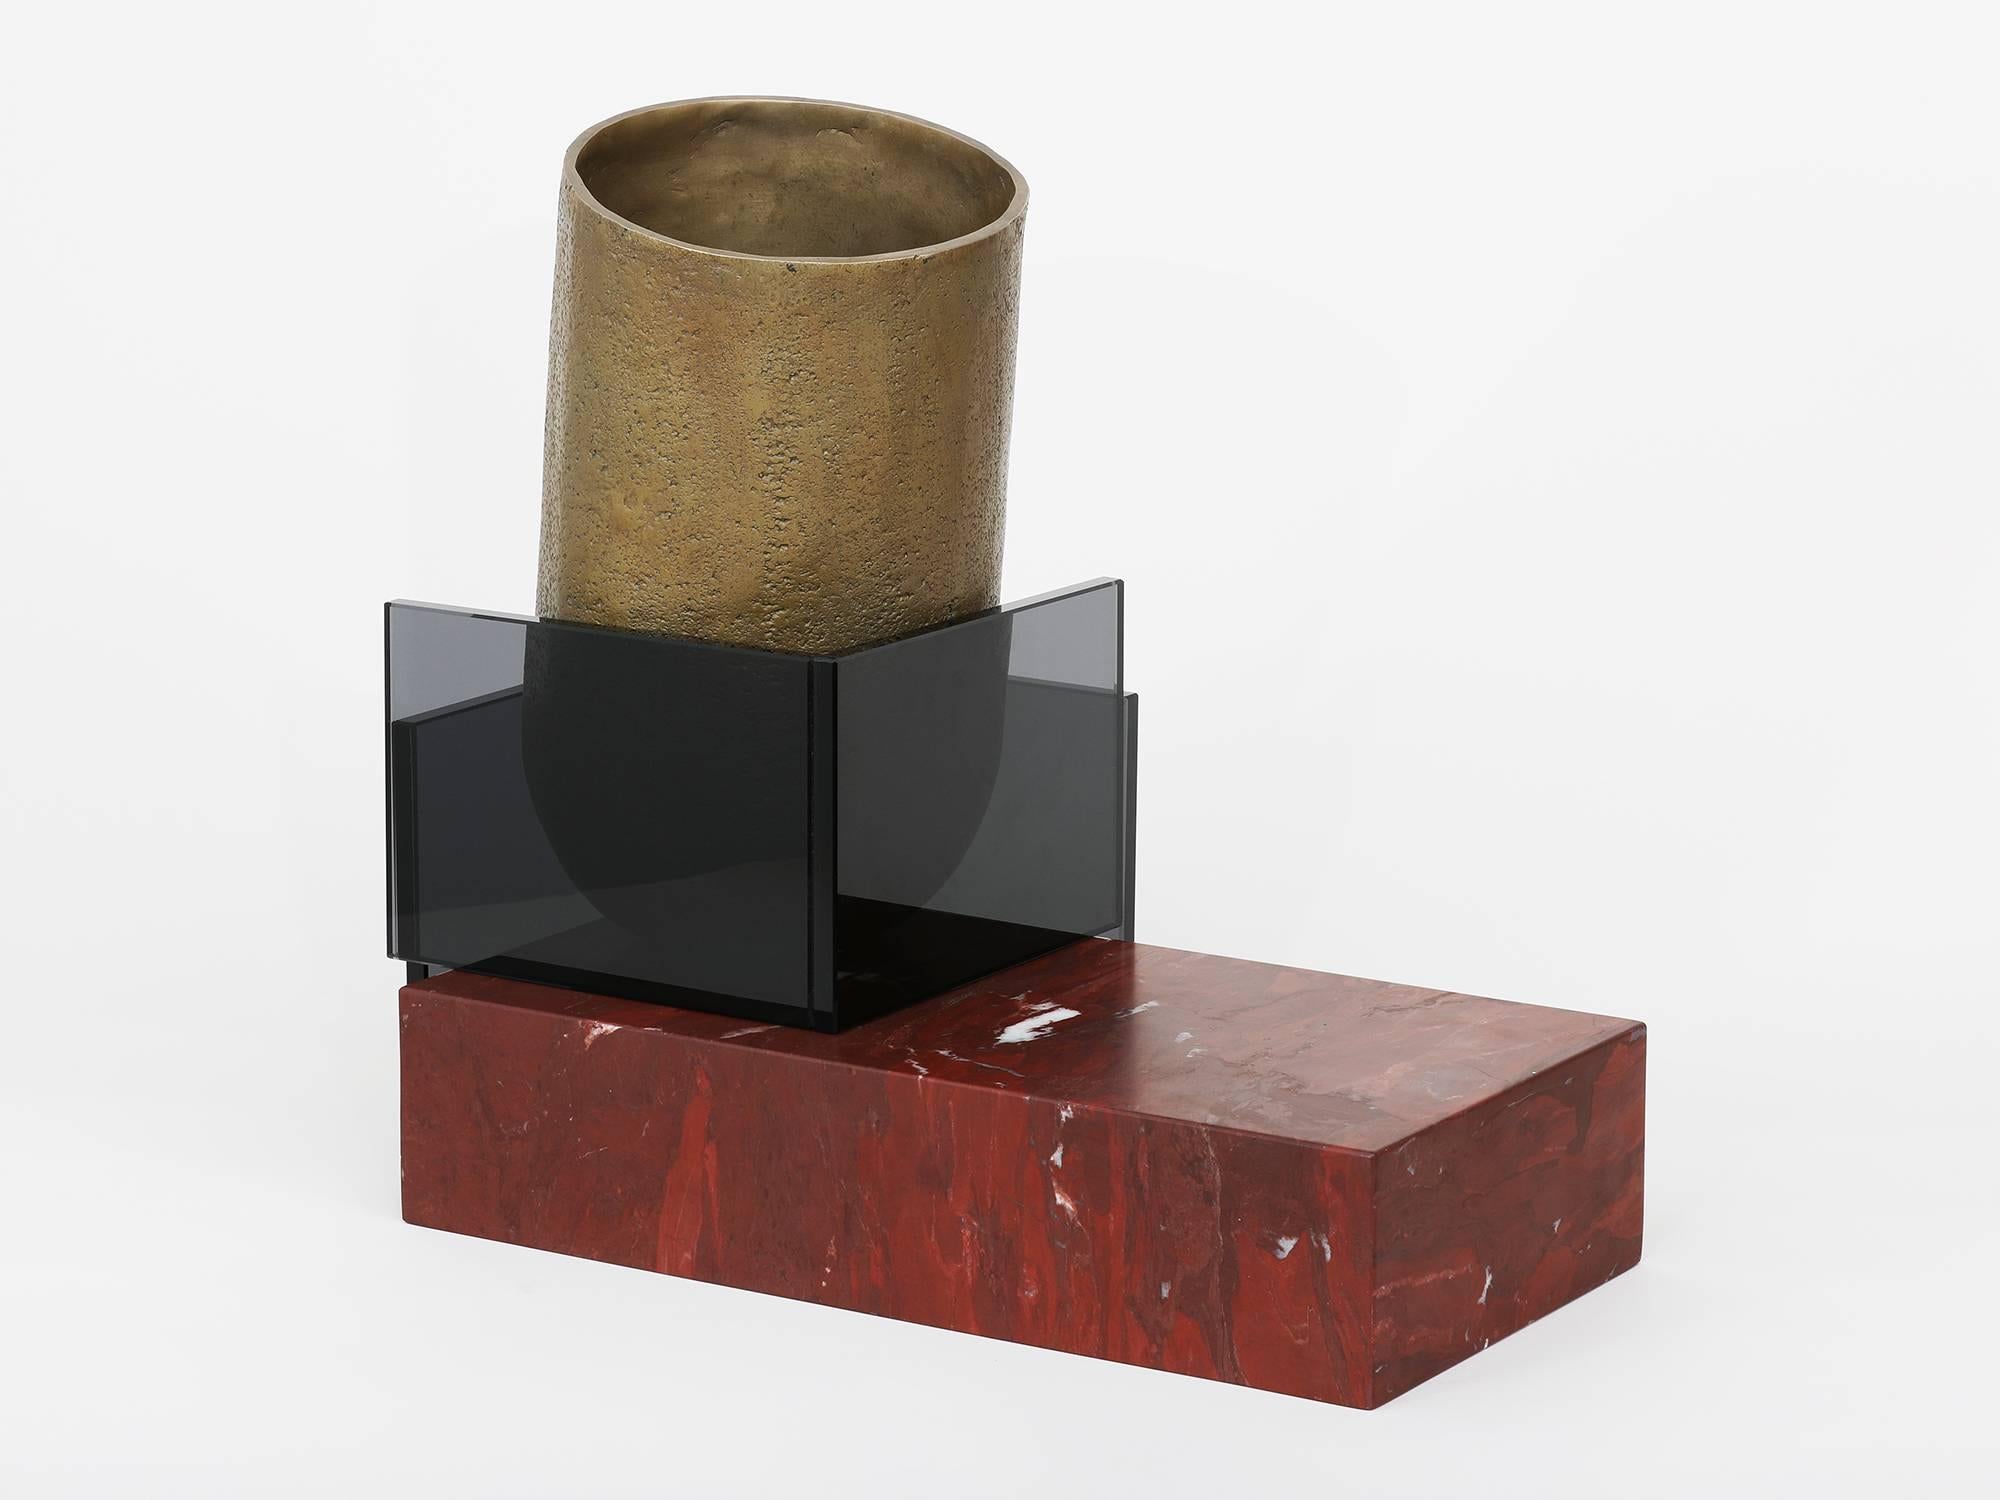 L'un des trois vaisseaux développés comme maquettes de matériaux pour les œuvres plus grandes de Brian Thoreen. Composé d'un récipient en bronze moulé, de marbre rouge et de verre gris. Disponible également en marbre brun ou gris et en verre bronze.